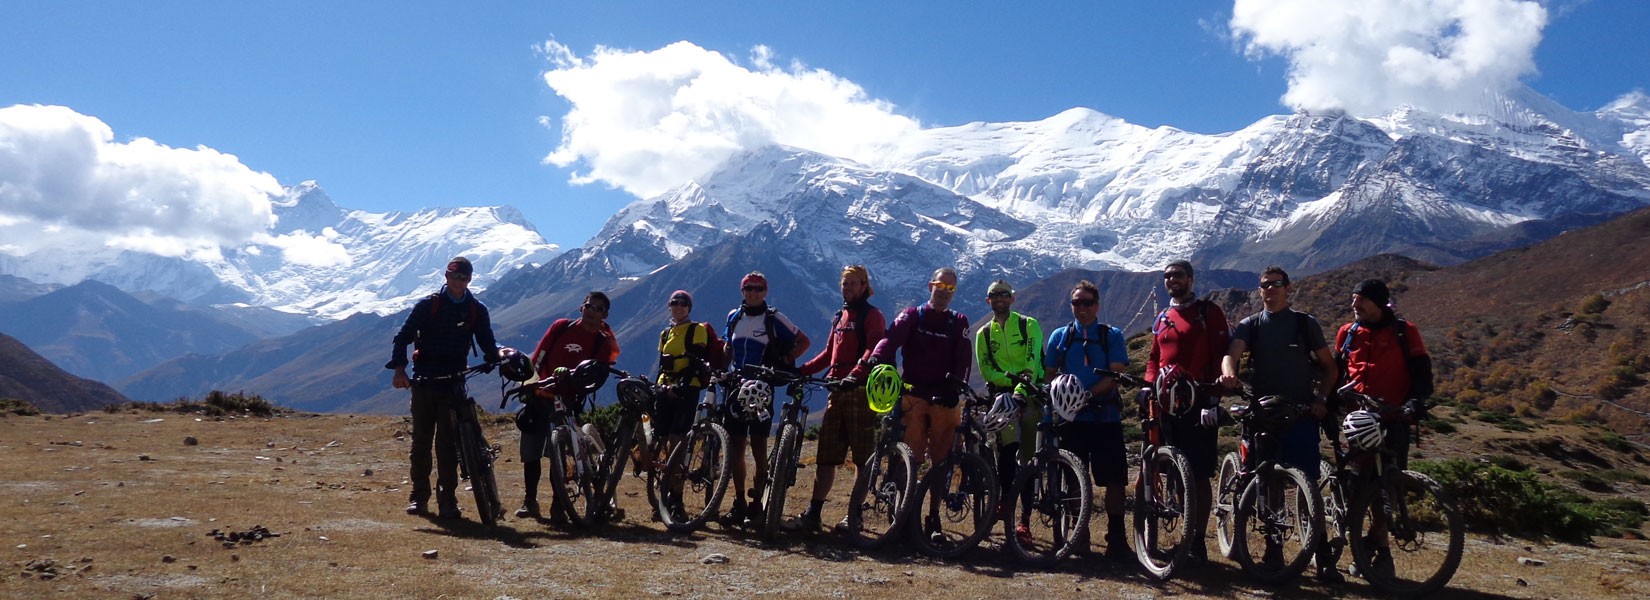 Annapurna Circuit with Tilicho Lake Mountain Biking Tour